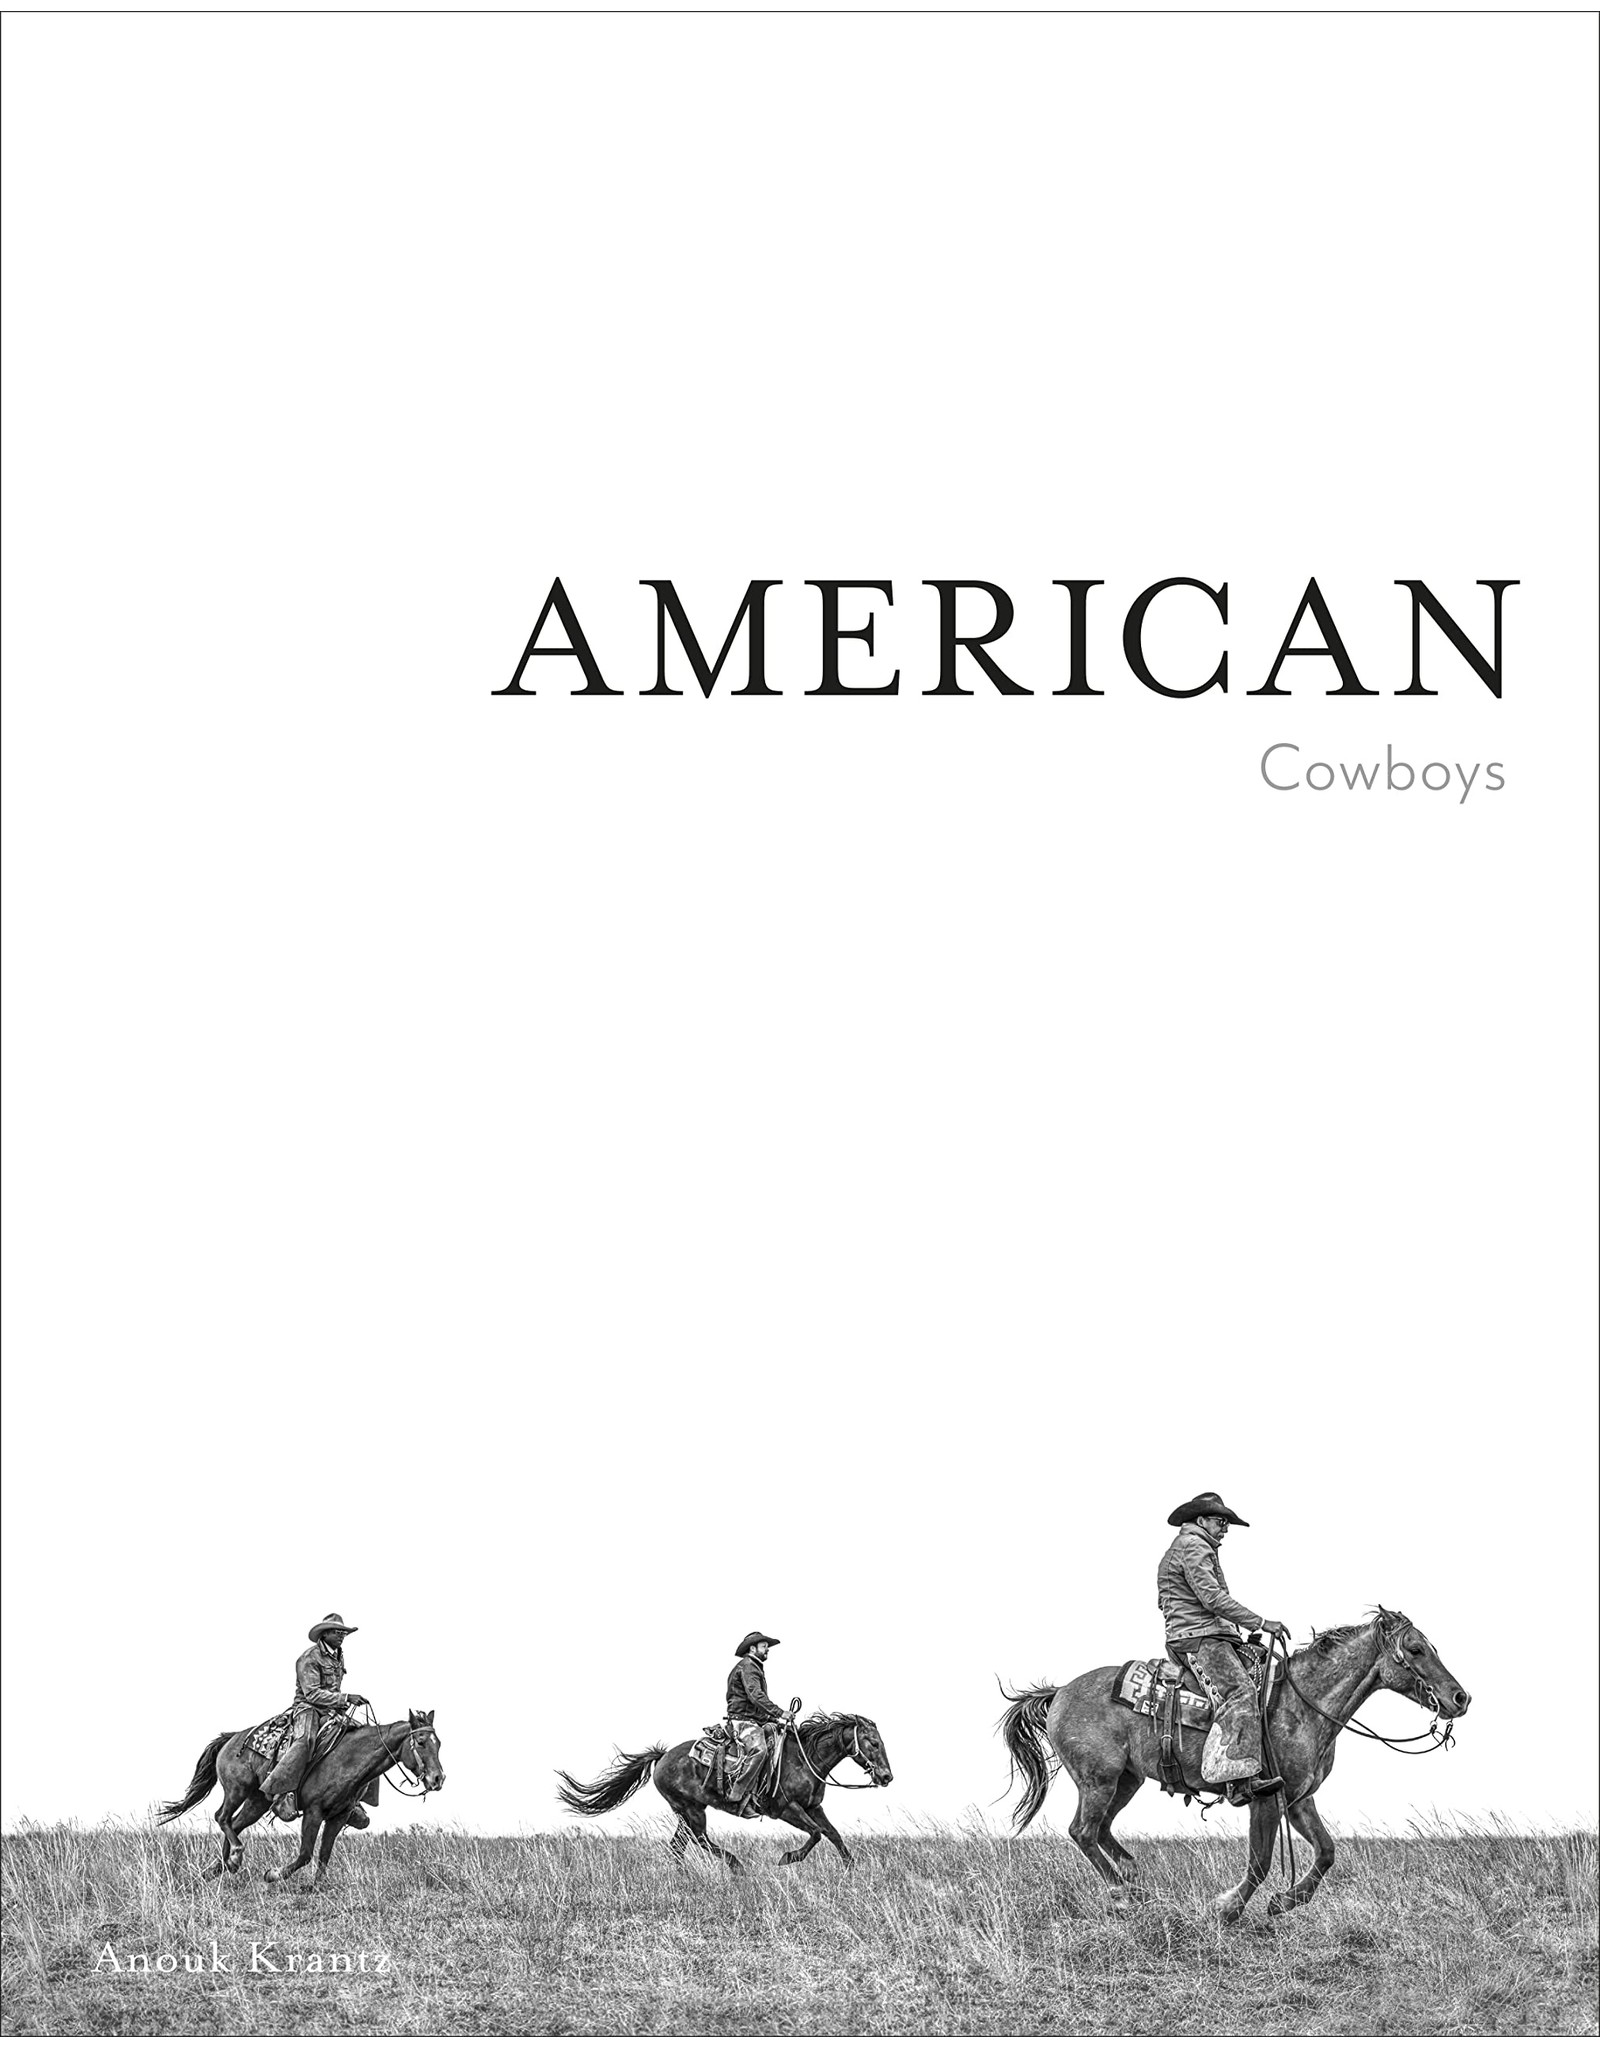 American Cowboys